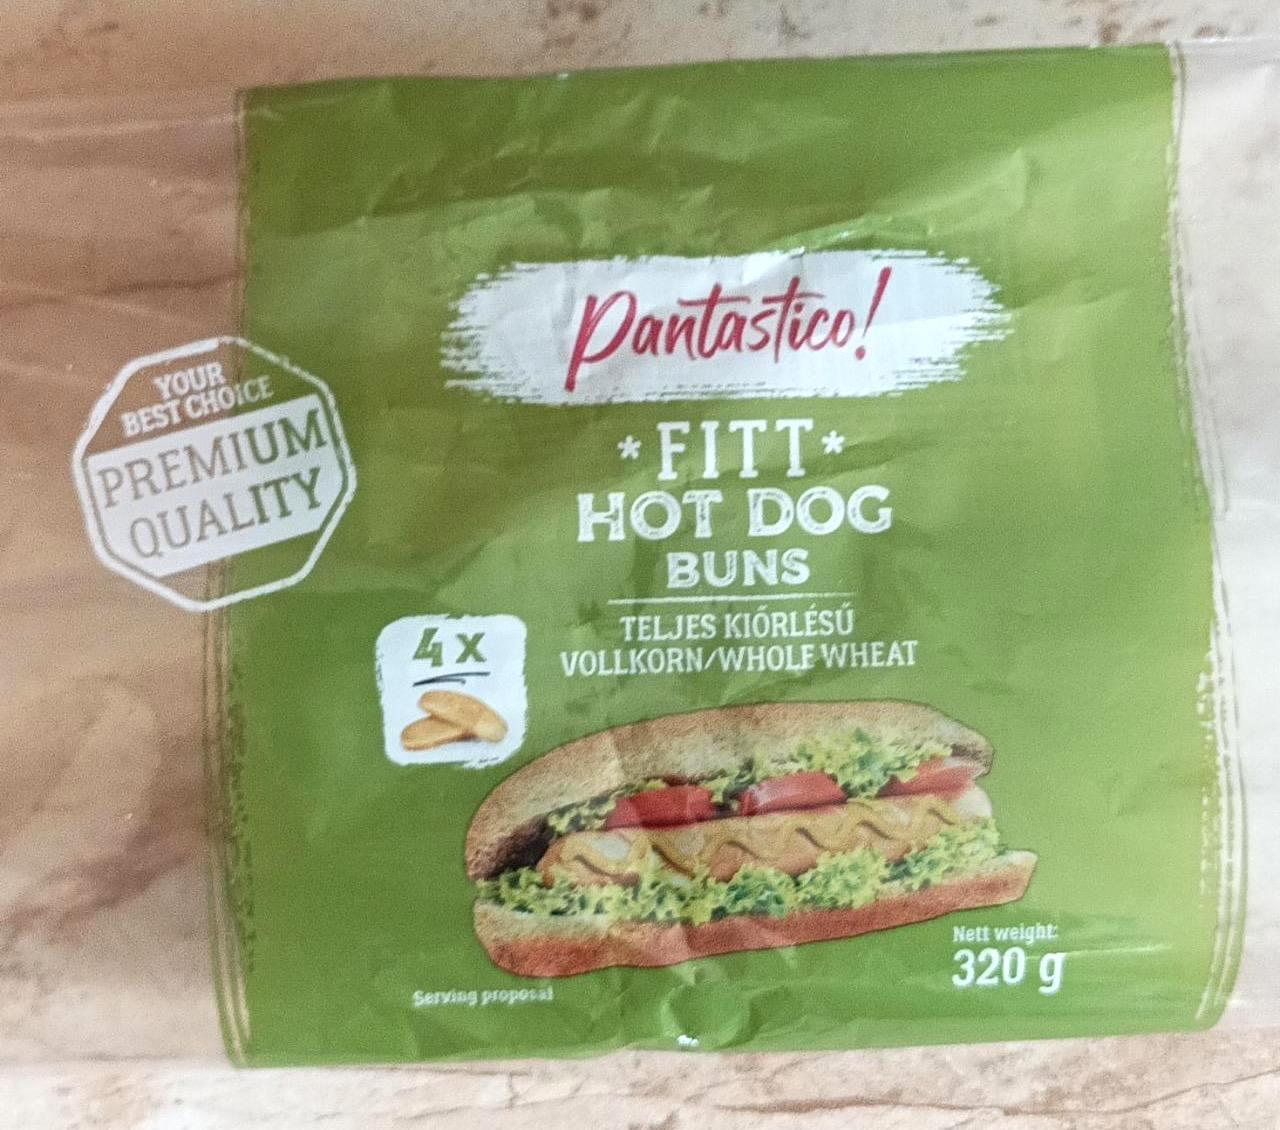 Képek - Fitt hot dog kifli teljes kiőrlésű Pantastico!